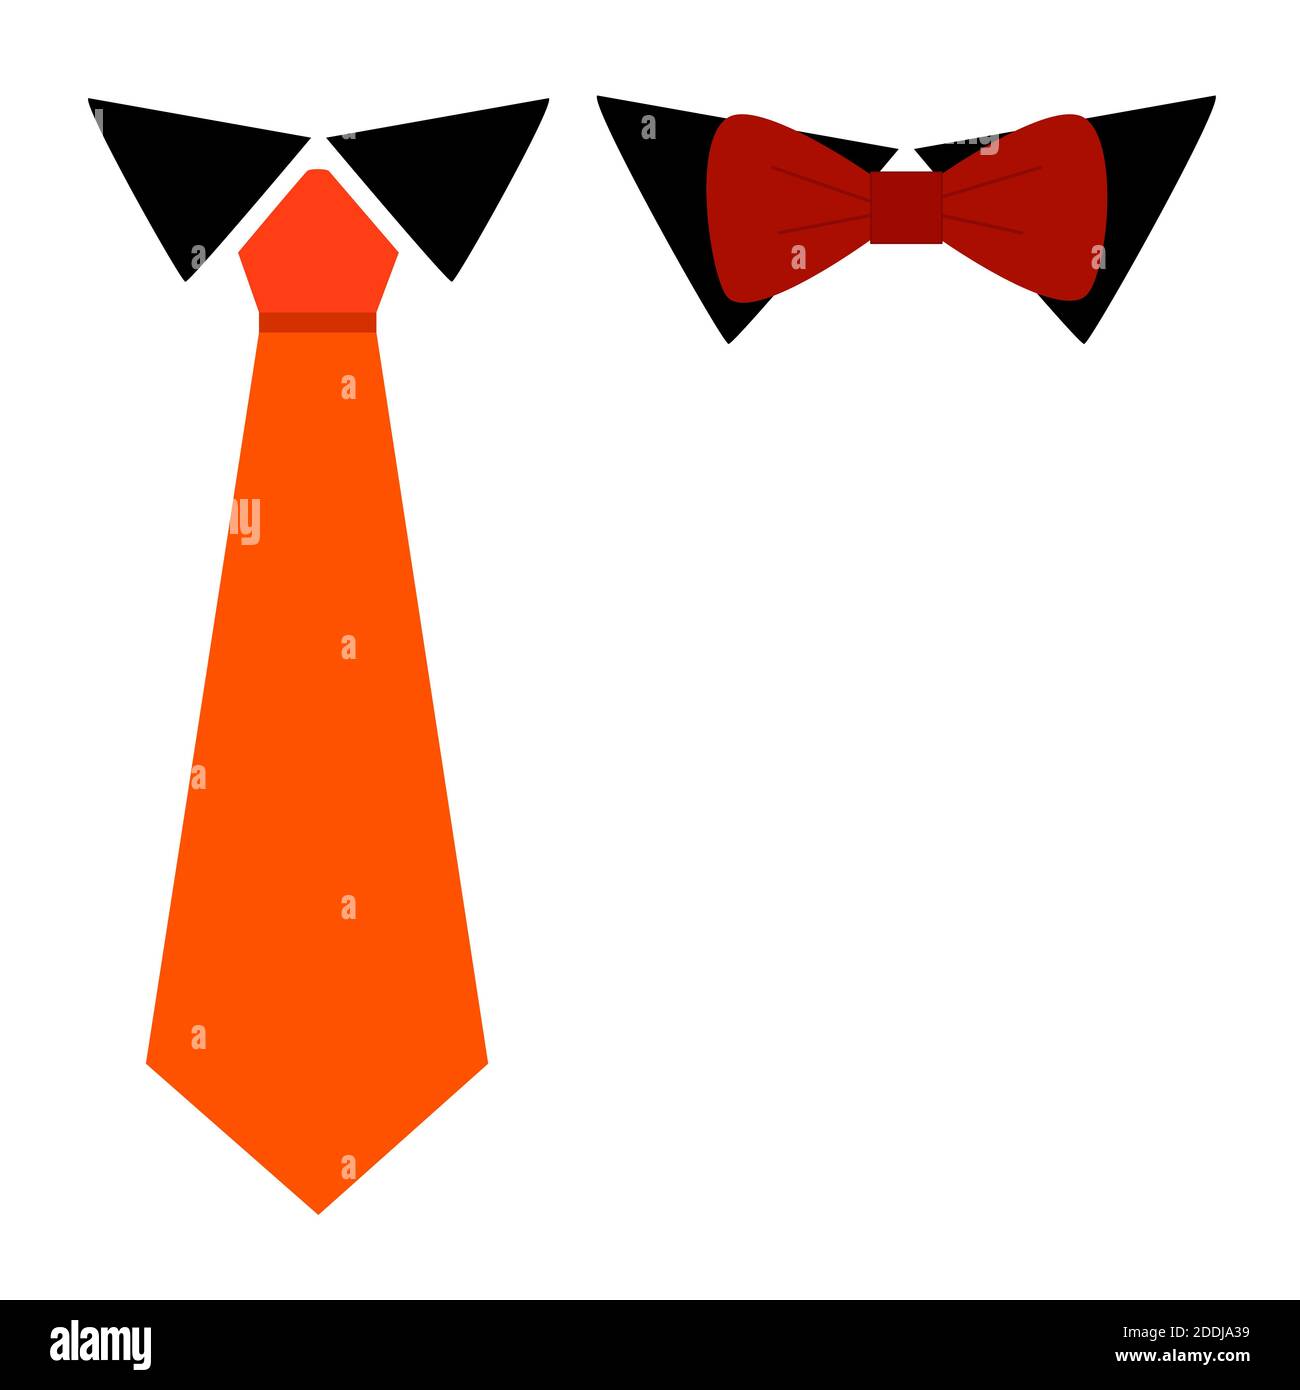 Cravatta classica e Bow Tie, cravatta colorata di carota e cravatta bow bordeaux su camicia nera accessori colletto piatto stile semplice, isolato su bianco. Illustrazione Vettoriale